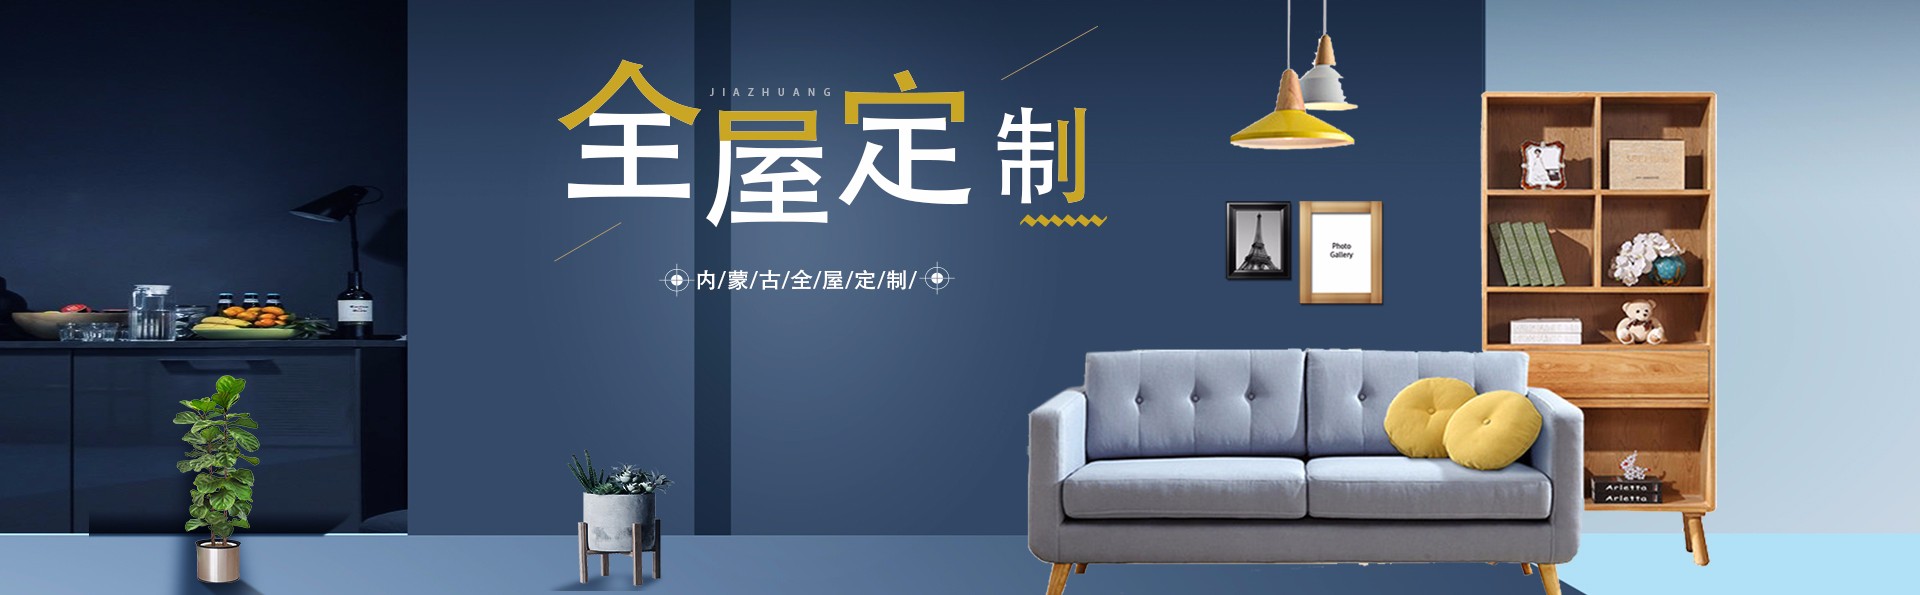 关于当前产品5822yh银河娱乐·(中国)官方网站的成功案例等相关图片